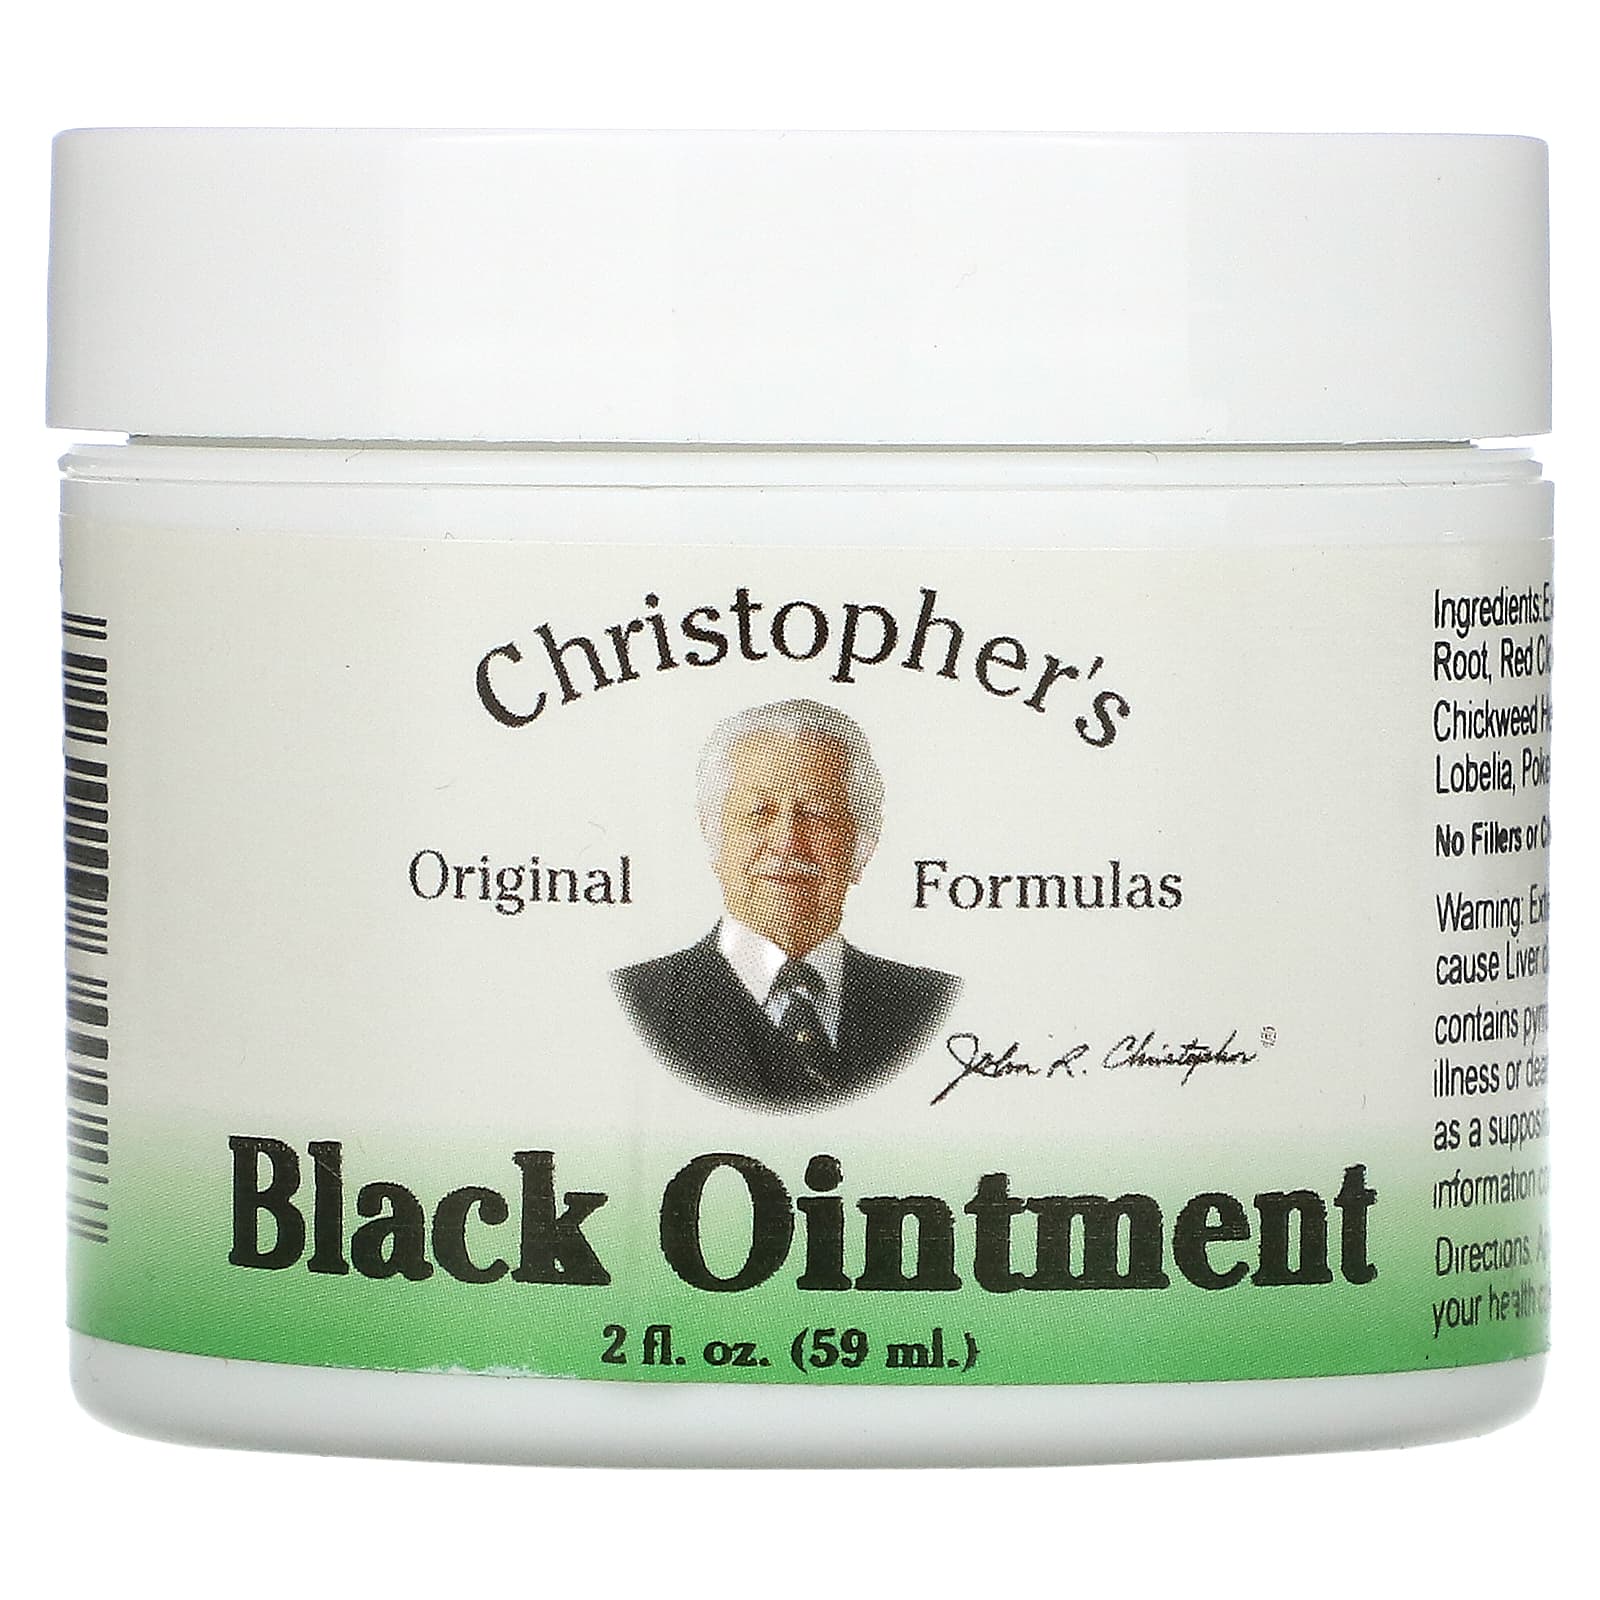 Christopher's Original Formulas Black Ointment противовоспалительная 59 мл (2 жидкие унции) christopher s original formulas экстракт эхинацеи глицериновая основа 2 жидкие унции 59 мл